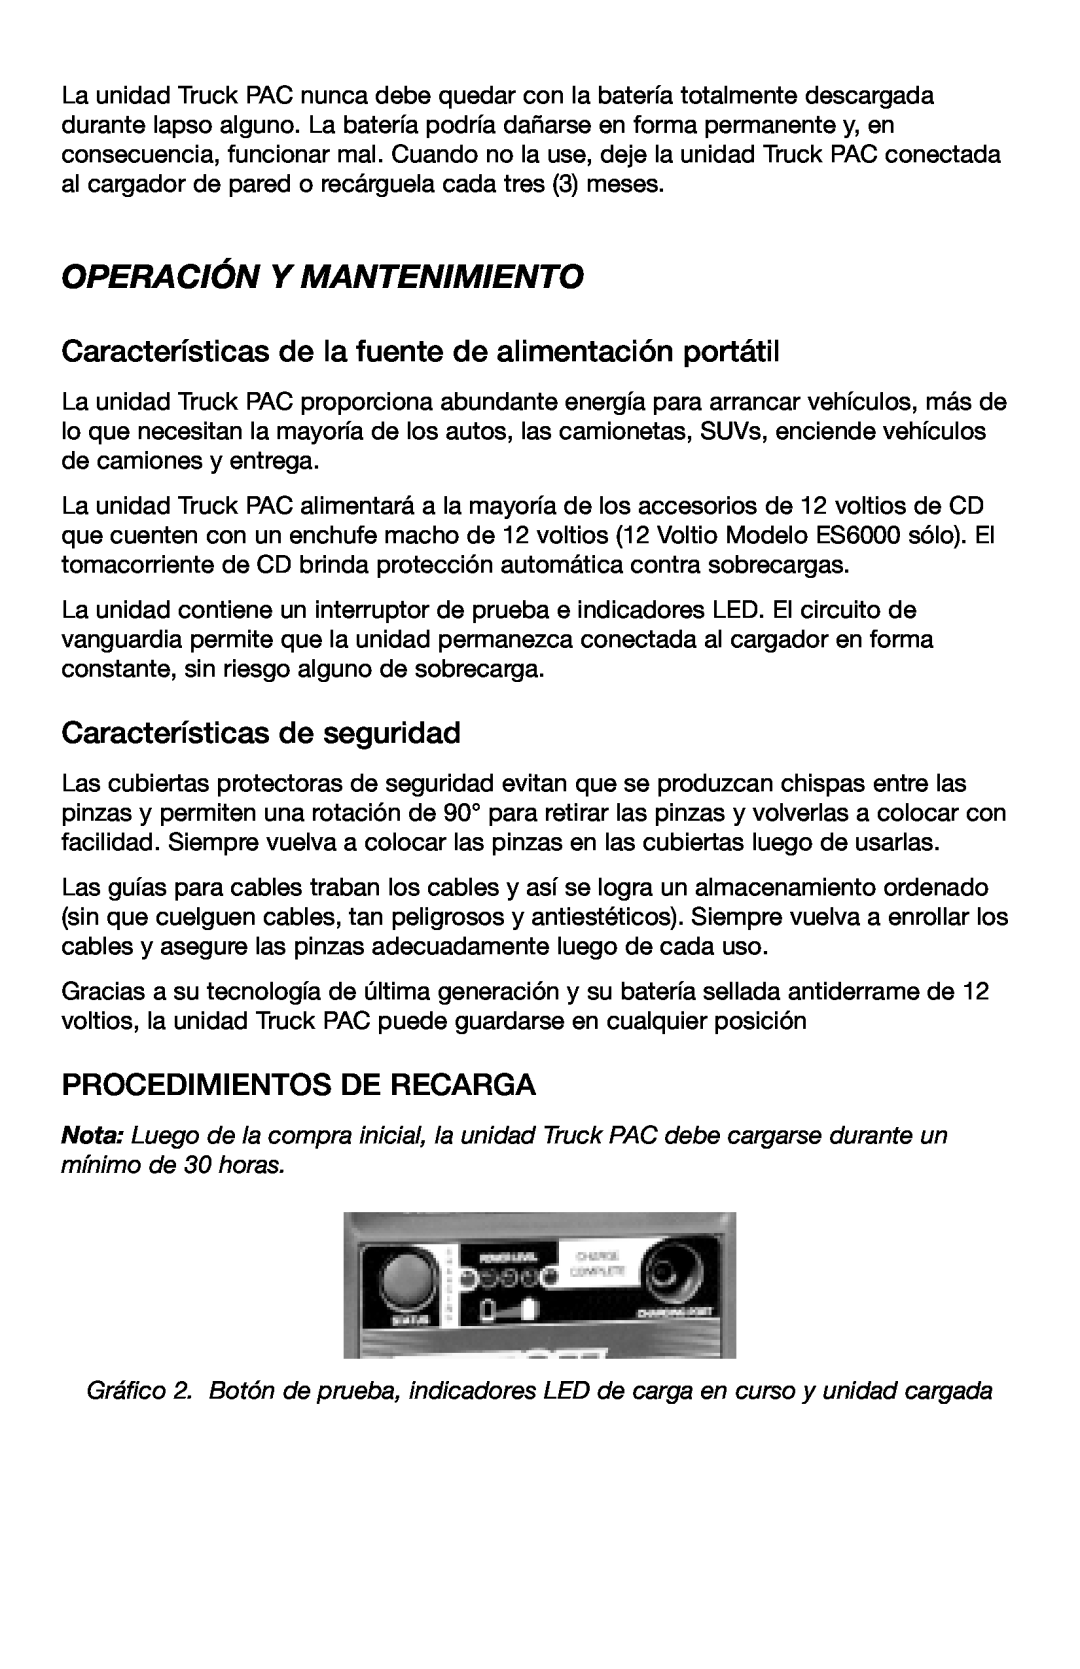 T-Tech ES8000 Operación Y Mantenimiento, Características de la fuente de alimentación portátil, Procedimientos De Recarga 